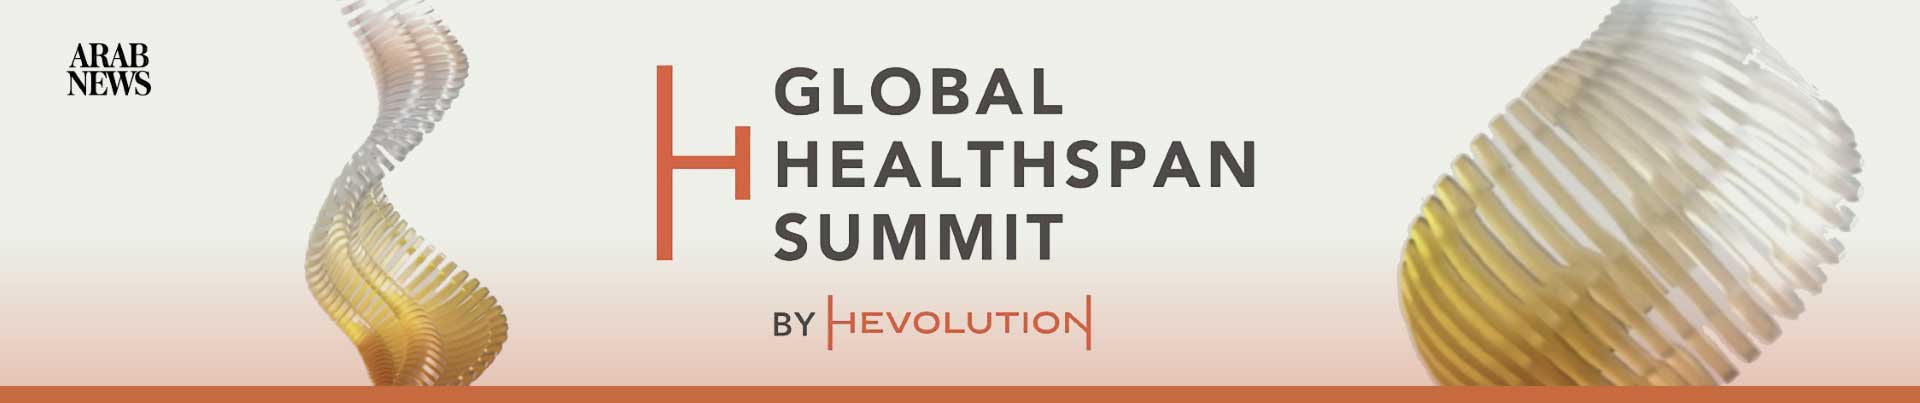 Global Healthspan Summit